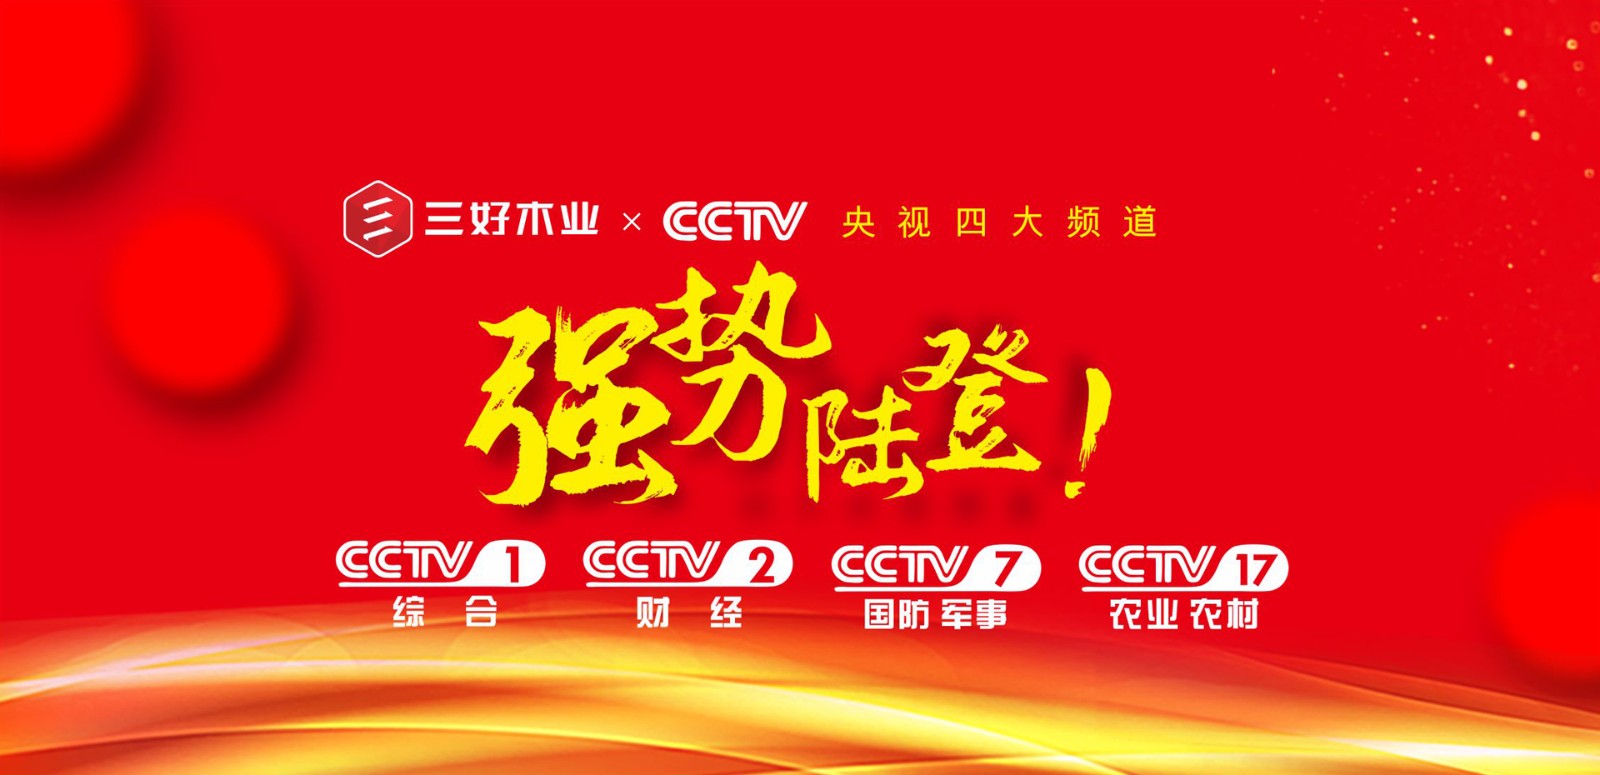 三好木业全面登陆CCTV-1、 CCTV-2、CCTV-7、CCTV-17四大央视频道